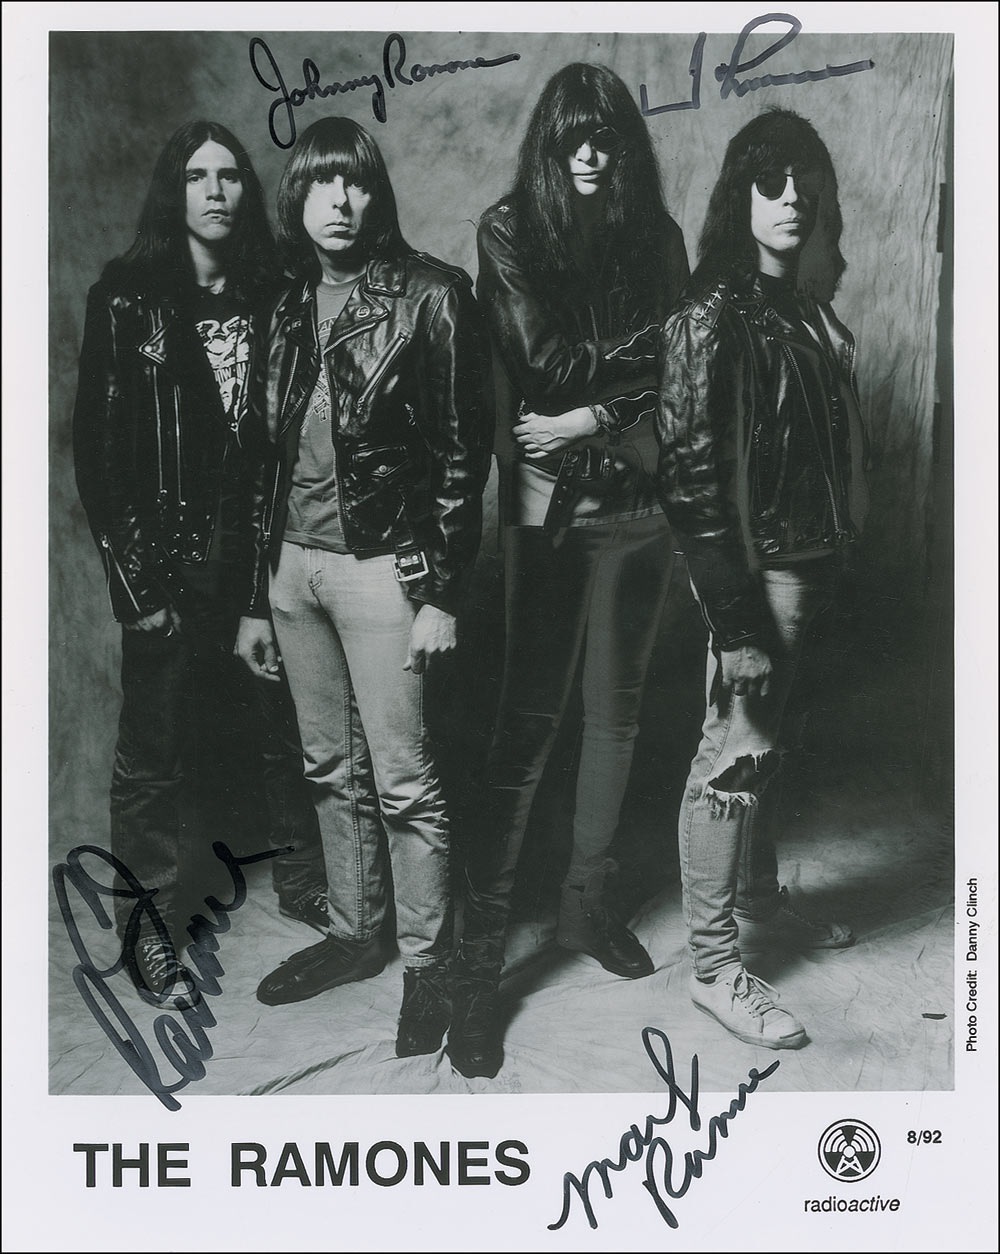 Lot #662 The Ramones